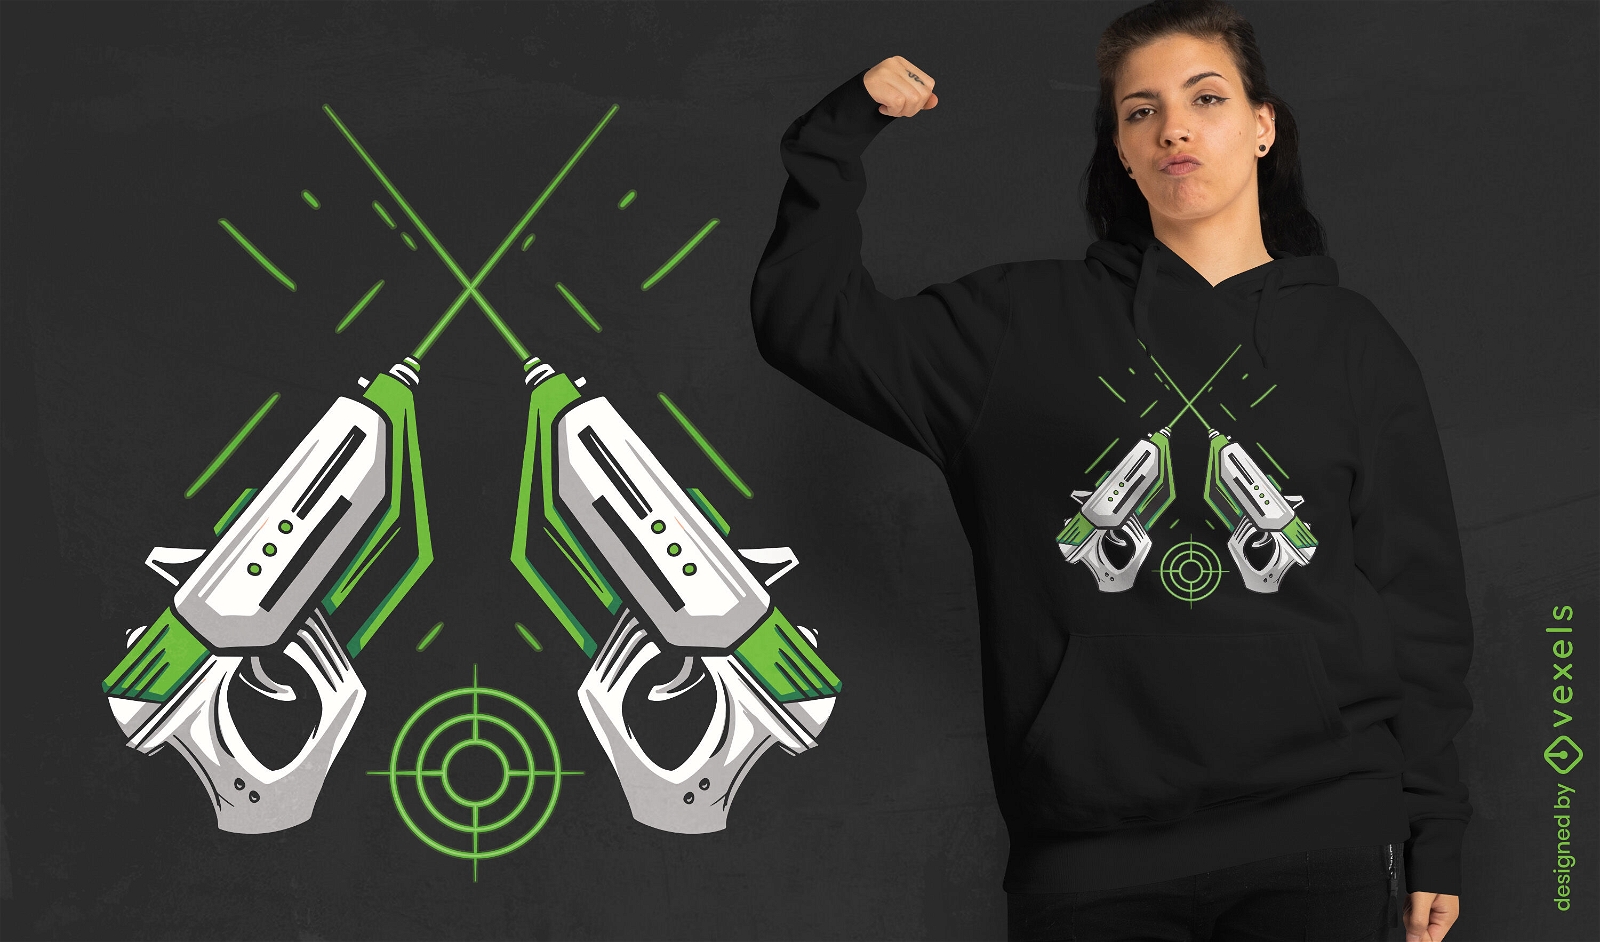 Laserpistolen-Gaming-T-Shirt-Design